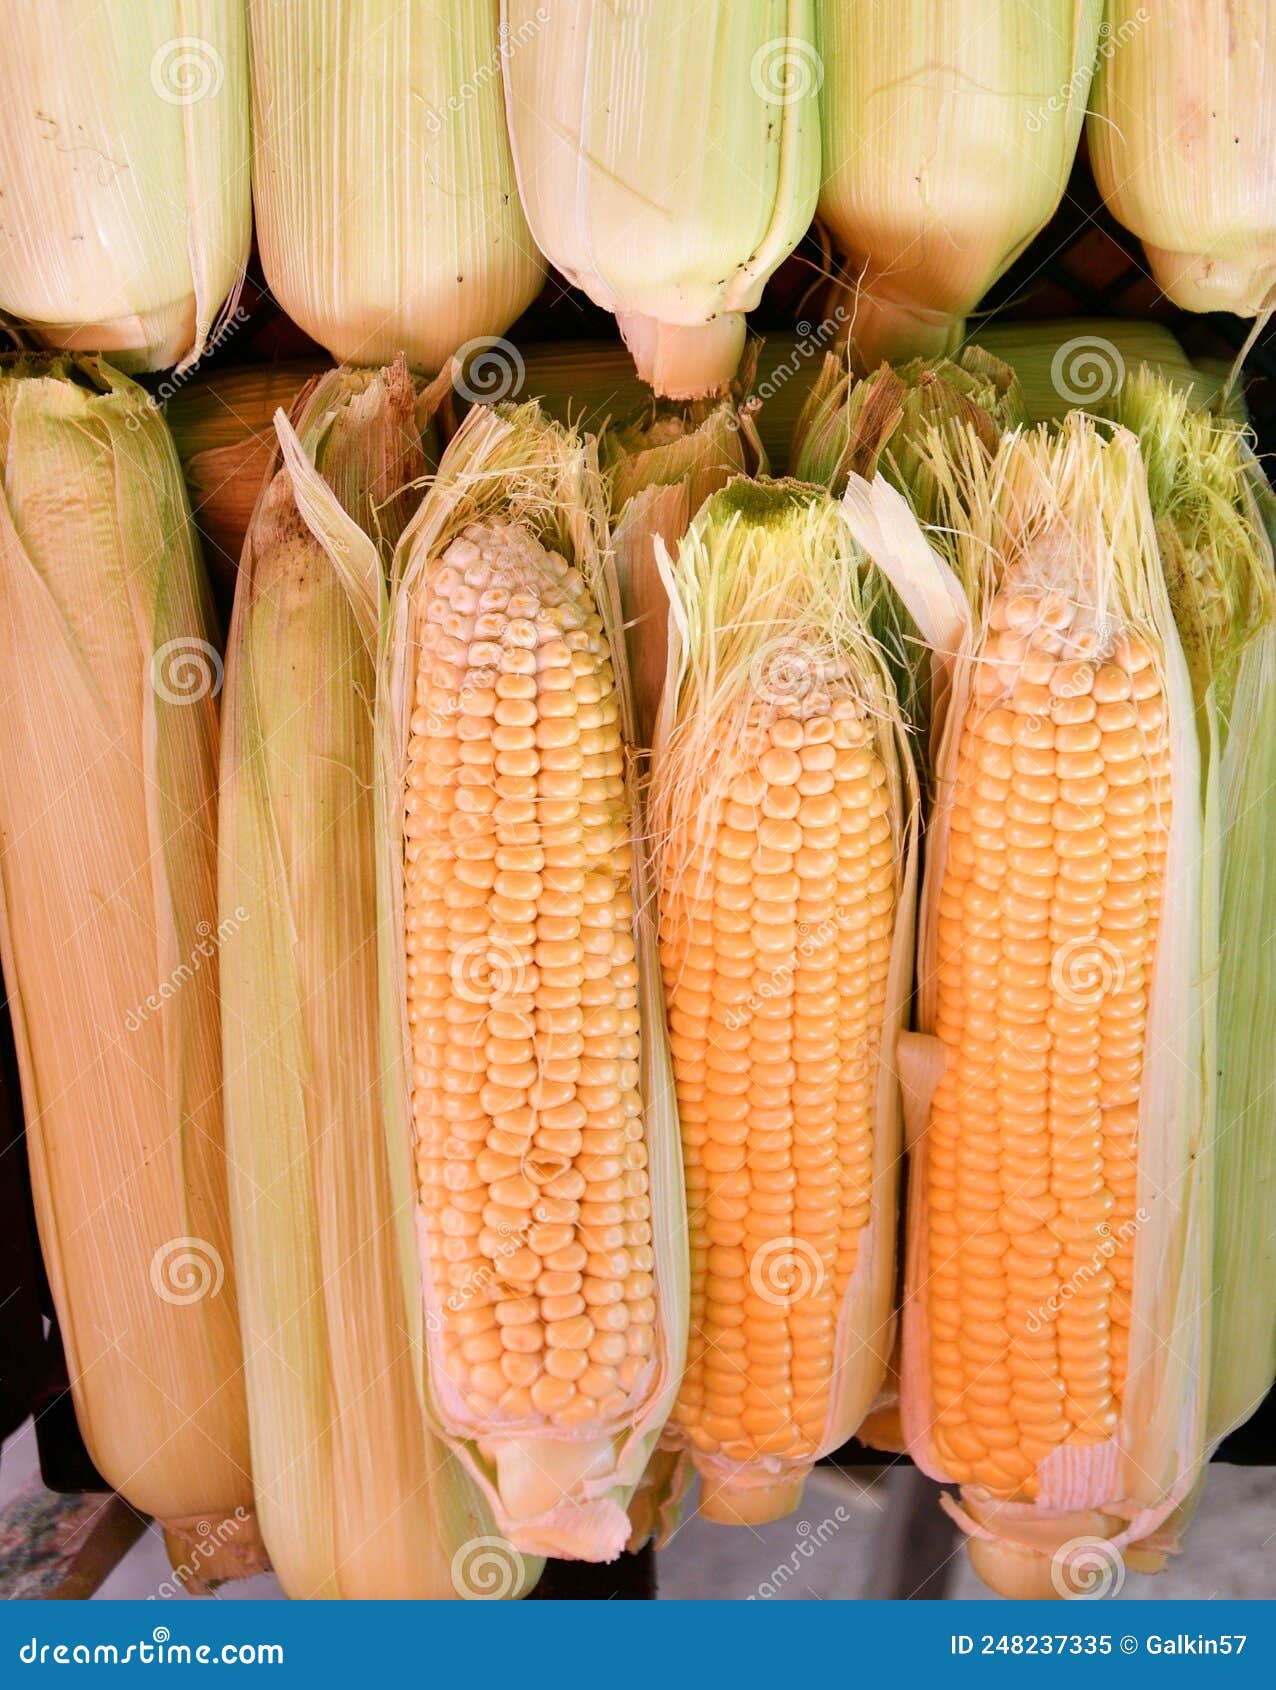 corn or maize lat. zea mays